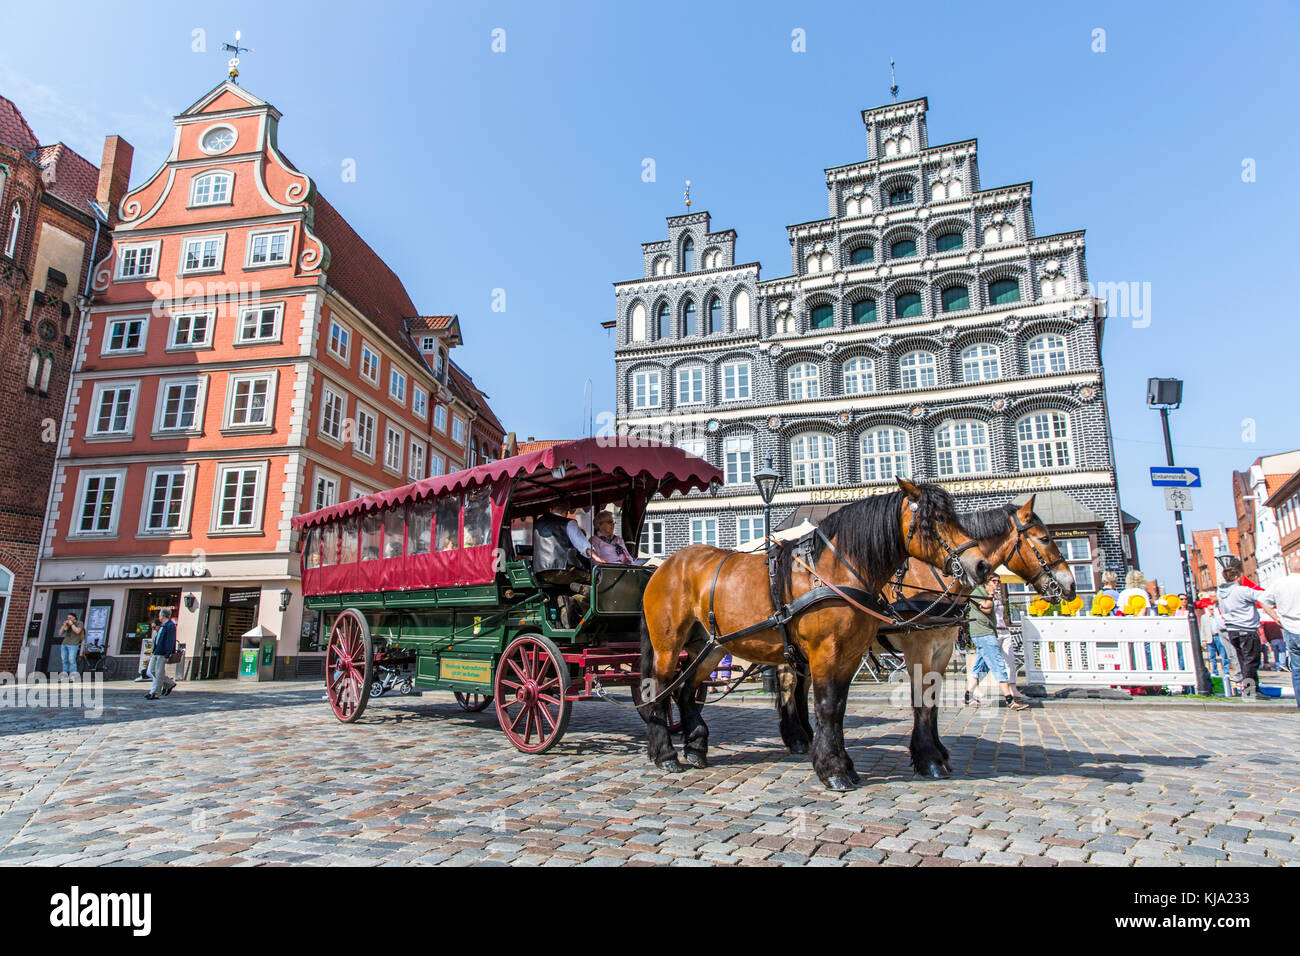 Luneburg, Alemania - 28 de mayo de 2016: coche tirado por caballos en la histórica plaza en luneburg Foto de stock